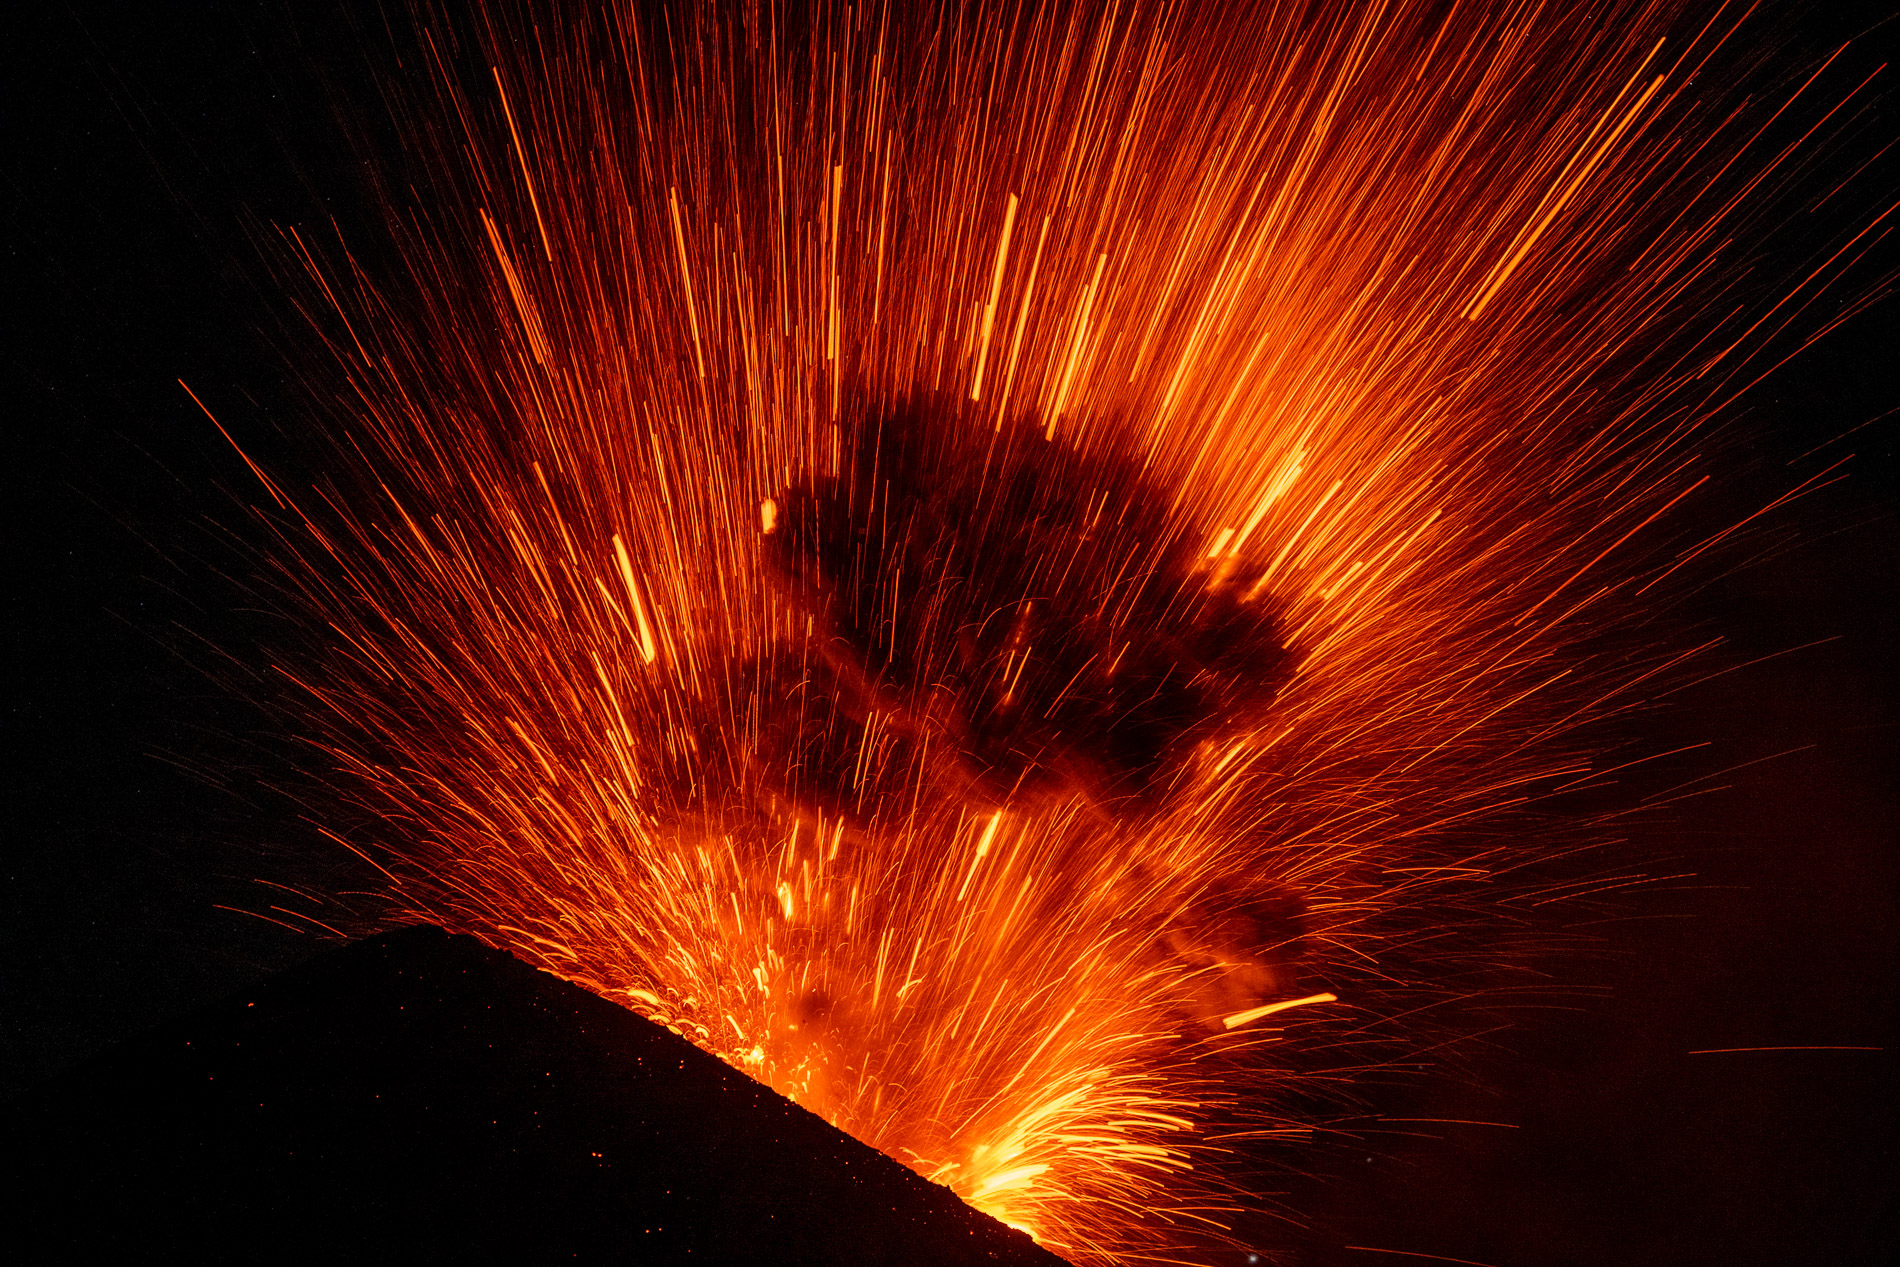 Le volcan Fuego culmine à 3 763 m. C’est l’un des volcans les plus actifs d’Amérique Centrale et également l’un des trois grands stratovolcans surplombant l’ancienne capitale du Guatemala, Antigua. Depuis 2002, le Fuego est à nouveau dans une phase active. À plusieurs reprises, ces éruptions ont entraîné d’importantes chutes de cendres, des coulées pyroclastiques, des coulées de lave et des lahars dommageables. Début juin 2018, une série d’explosions et de coulées pyroclastiques accompagnées de l’effondrement d’une partie du flanc du volcan ont provoqué plusieurs centaines de morts. L’activité éruptive consiste le plus souvent en des explosions avec des émissions de cendres, des avalanches de blocs et des coulées de lave. 
The Fuego volcano culminates at 3,763 m. It is one of the most active volcanoes in Central America and also one of three large stratovolcanoes overlooking the former capital of Guatemala, Antigua. Since 2002, the Fuego is again in an active phase. On several occasions, these eruptions have resulted in significant ashfall, pyroclastic flows, lava flows and damaging lahars. In early June 2018, a series of explosions and pyroclastic flows accompanied by the collapse of part of the side of the volcano caused several hundred deaths. Eruptive activity most often consists of explosions with ash emissions, boulder avalanches and lava flows.